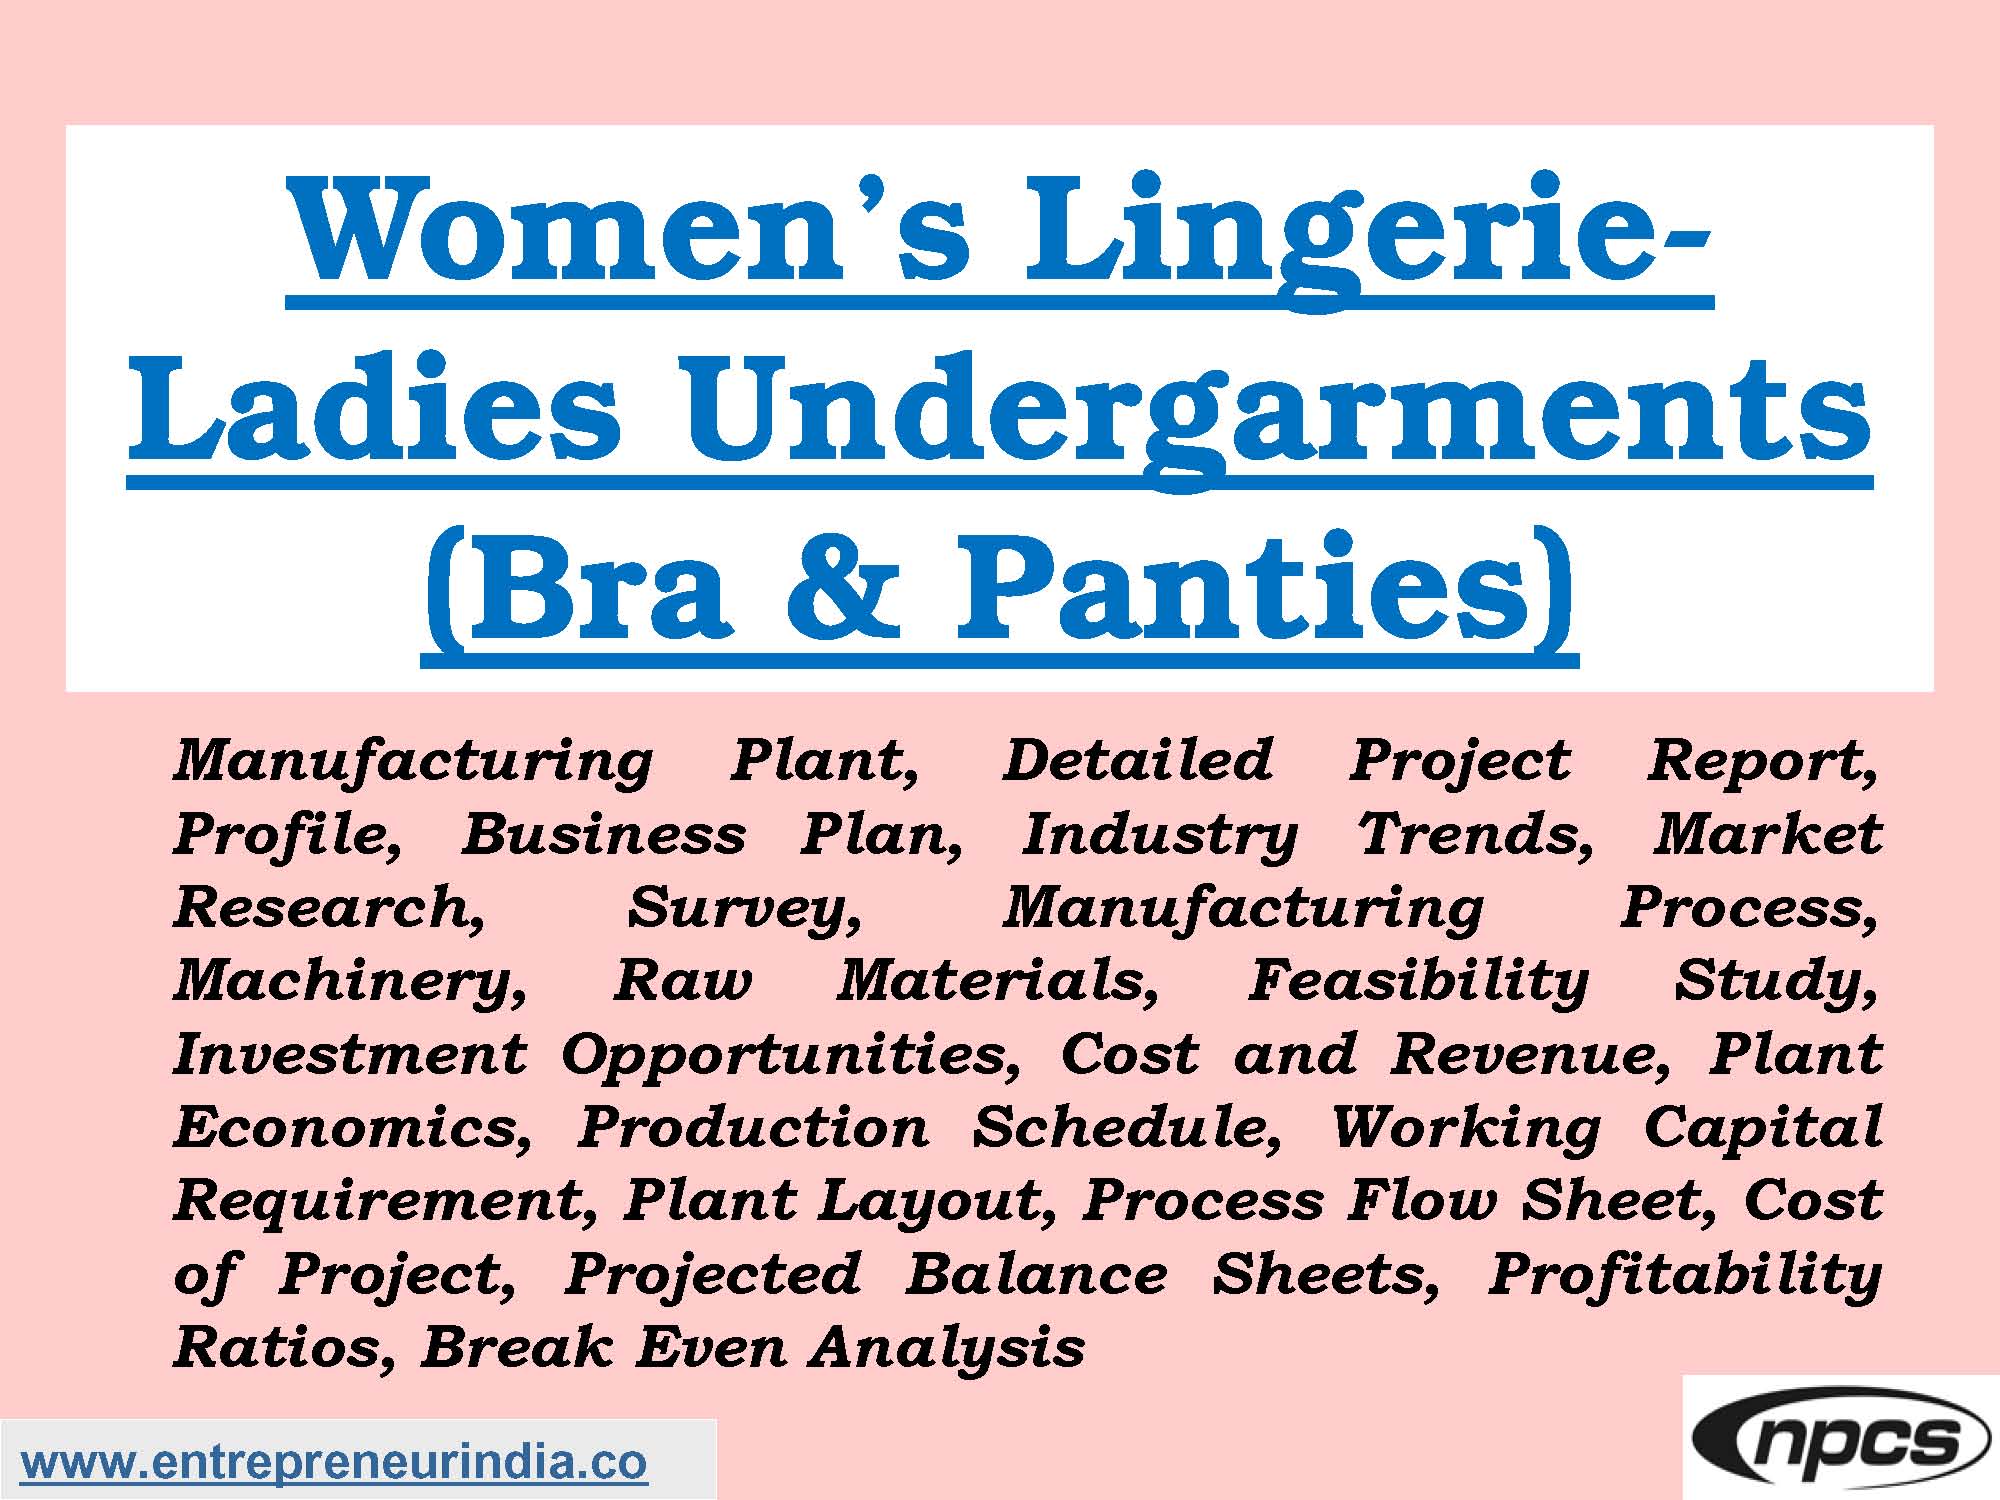 Women's Lingerie-Ladies Undergarments (Bra & Panties